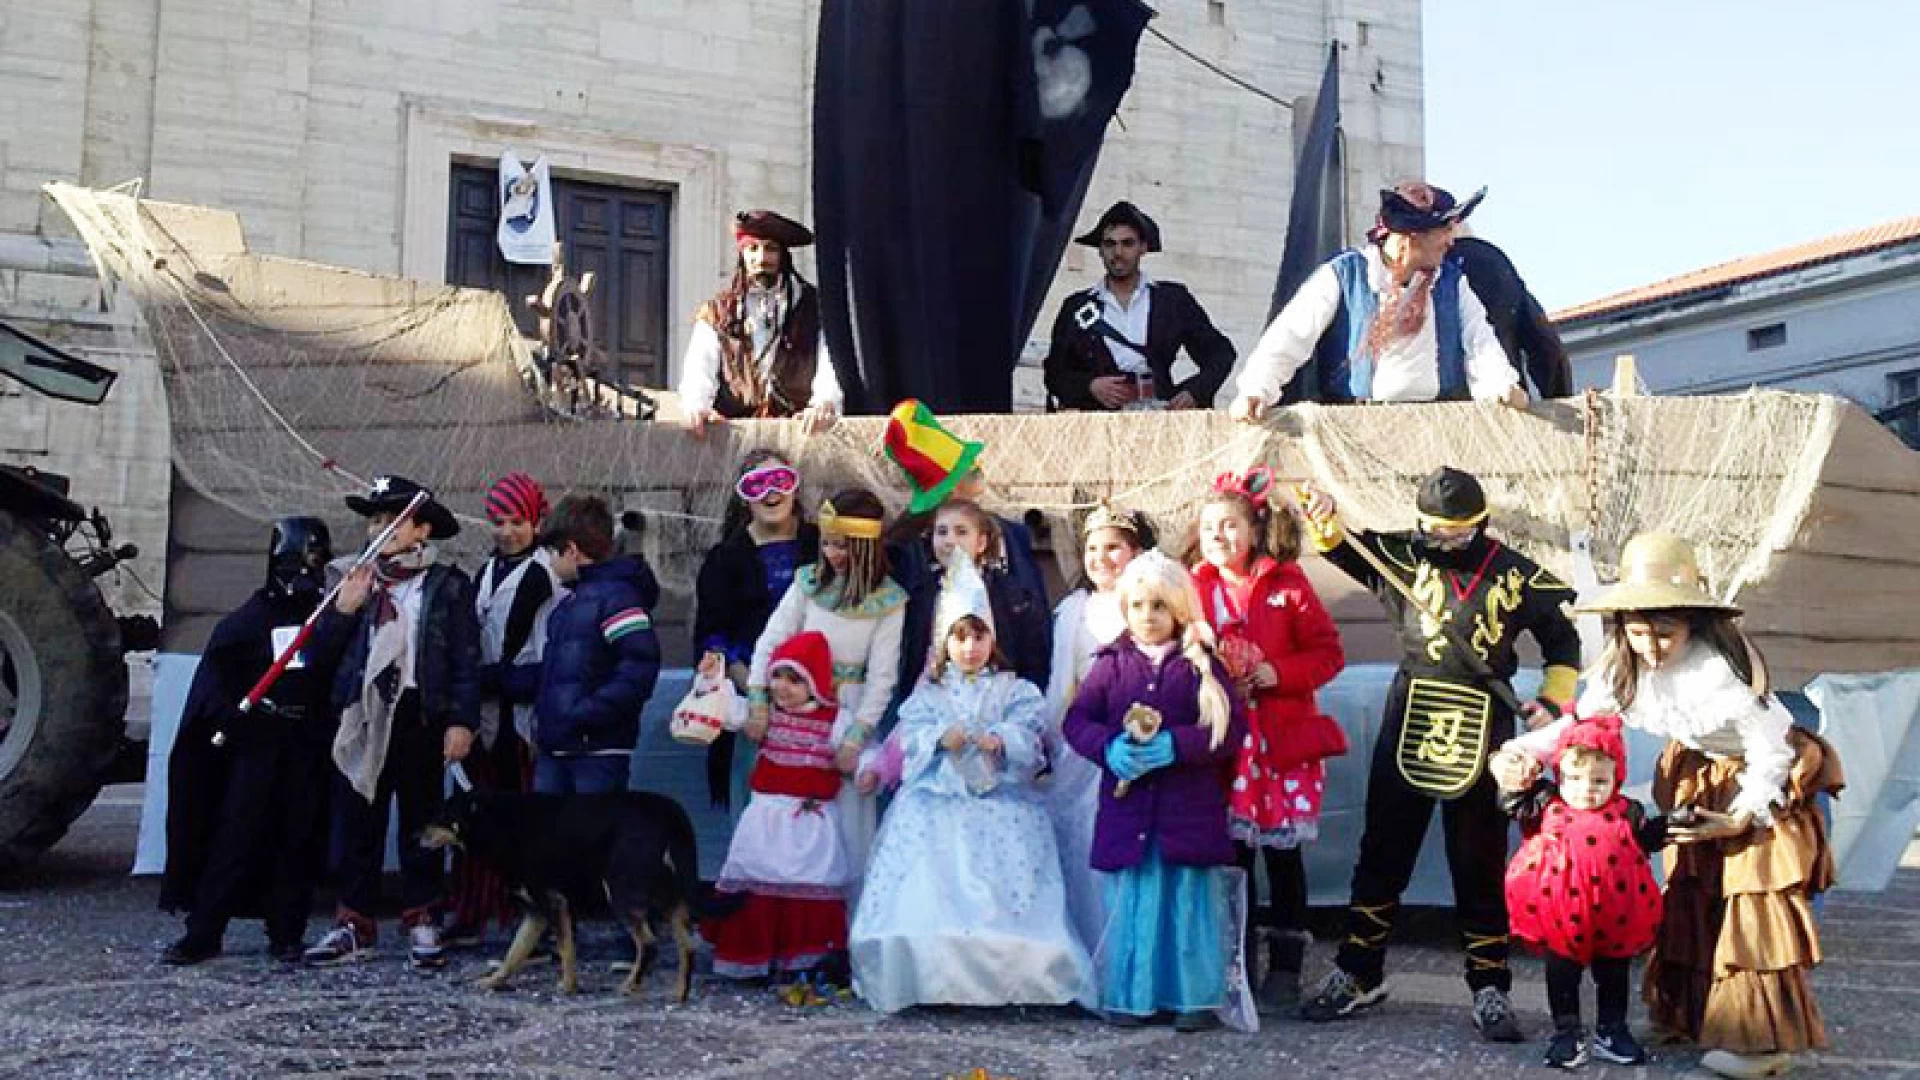 A Filignano un Carnevale da Pirati… Riuscita la sfilata con il carro allegorico promossa da alcuni giovani volenterosi del posto.